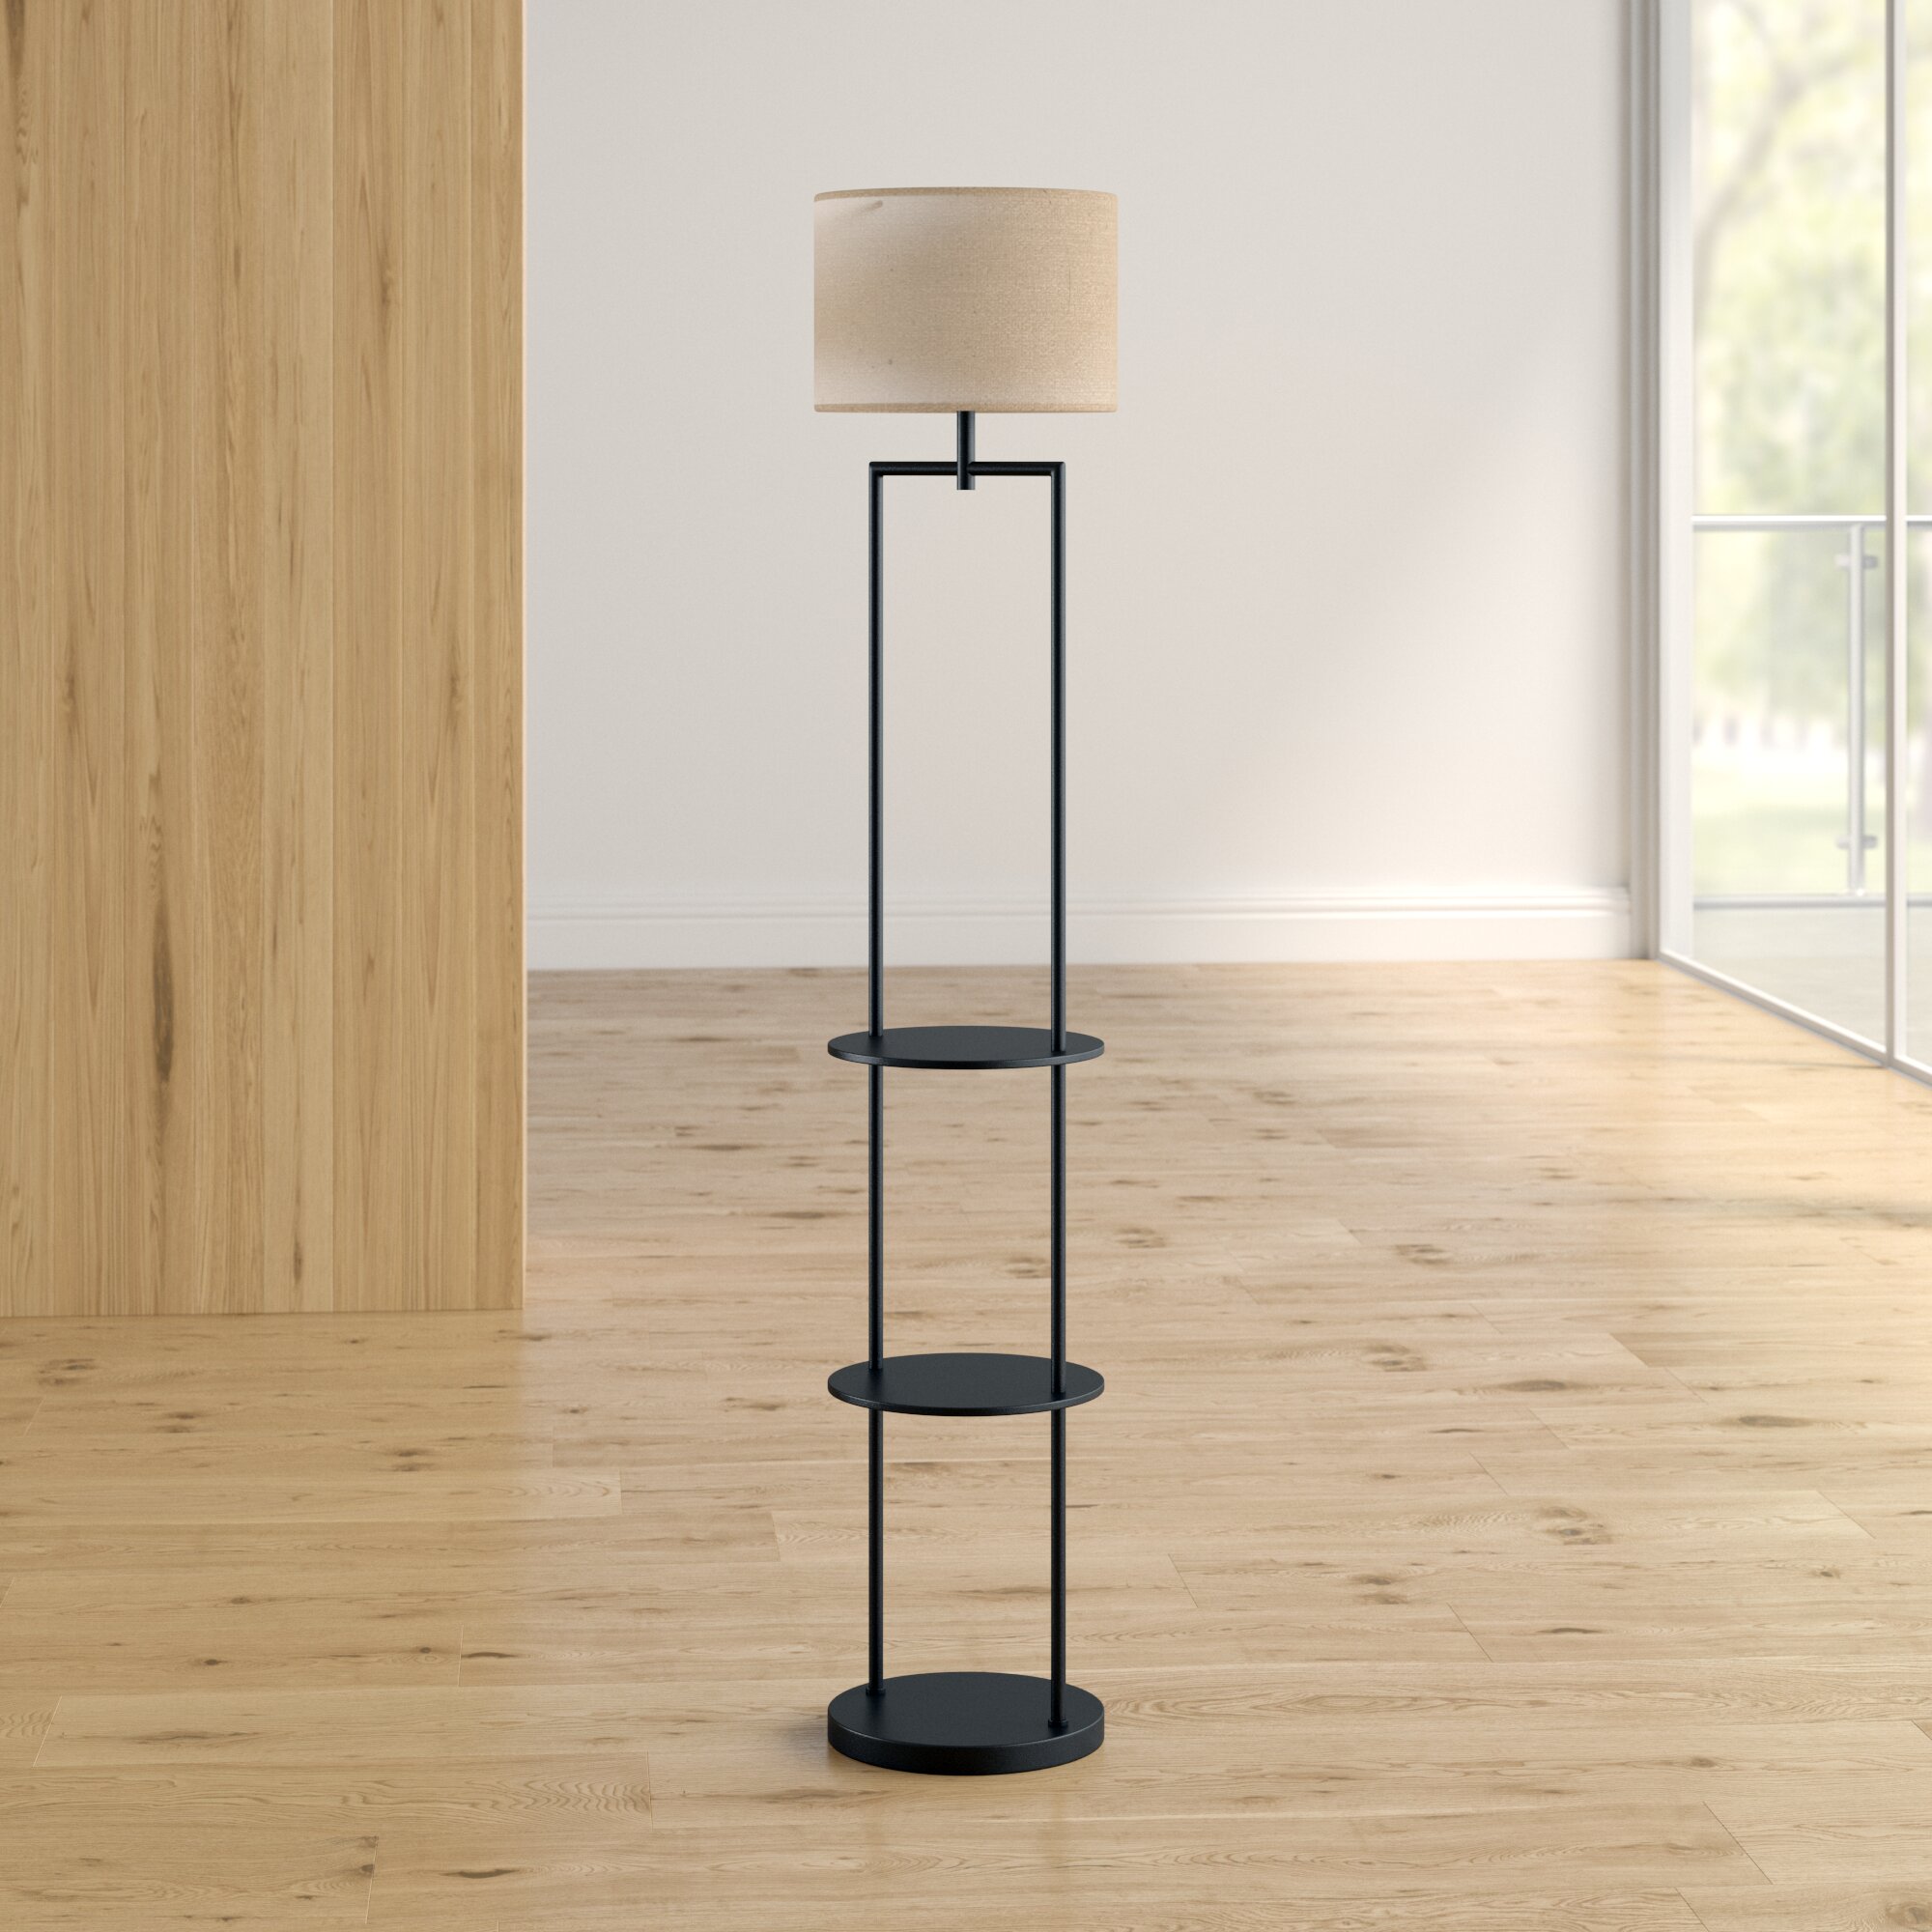 Zipcode Design Odalys Etagere 60 Floor Lamp Reviews Wayfair Ca